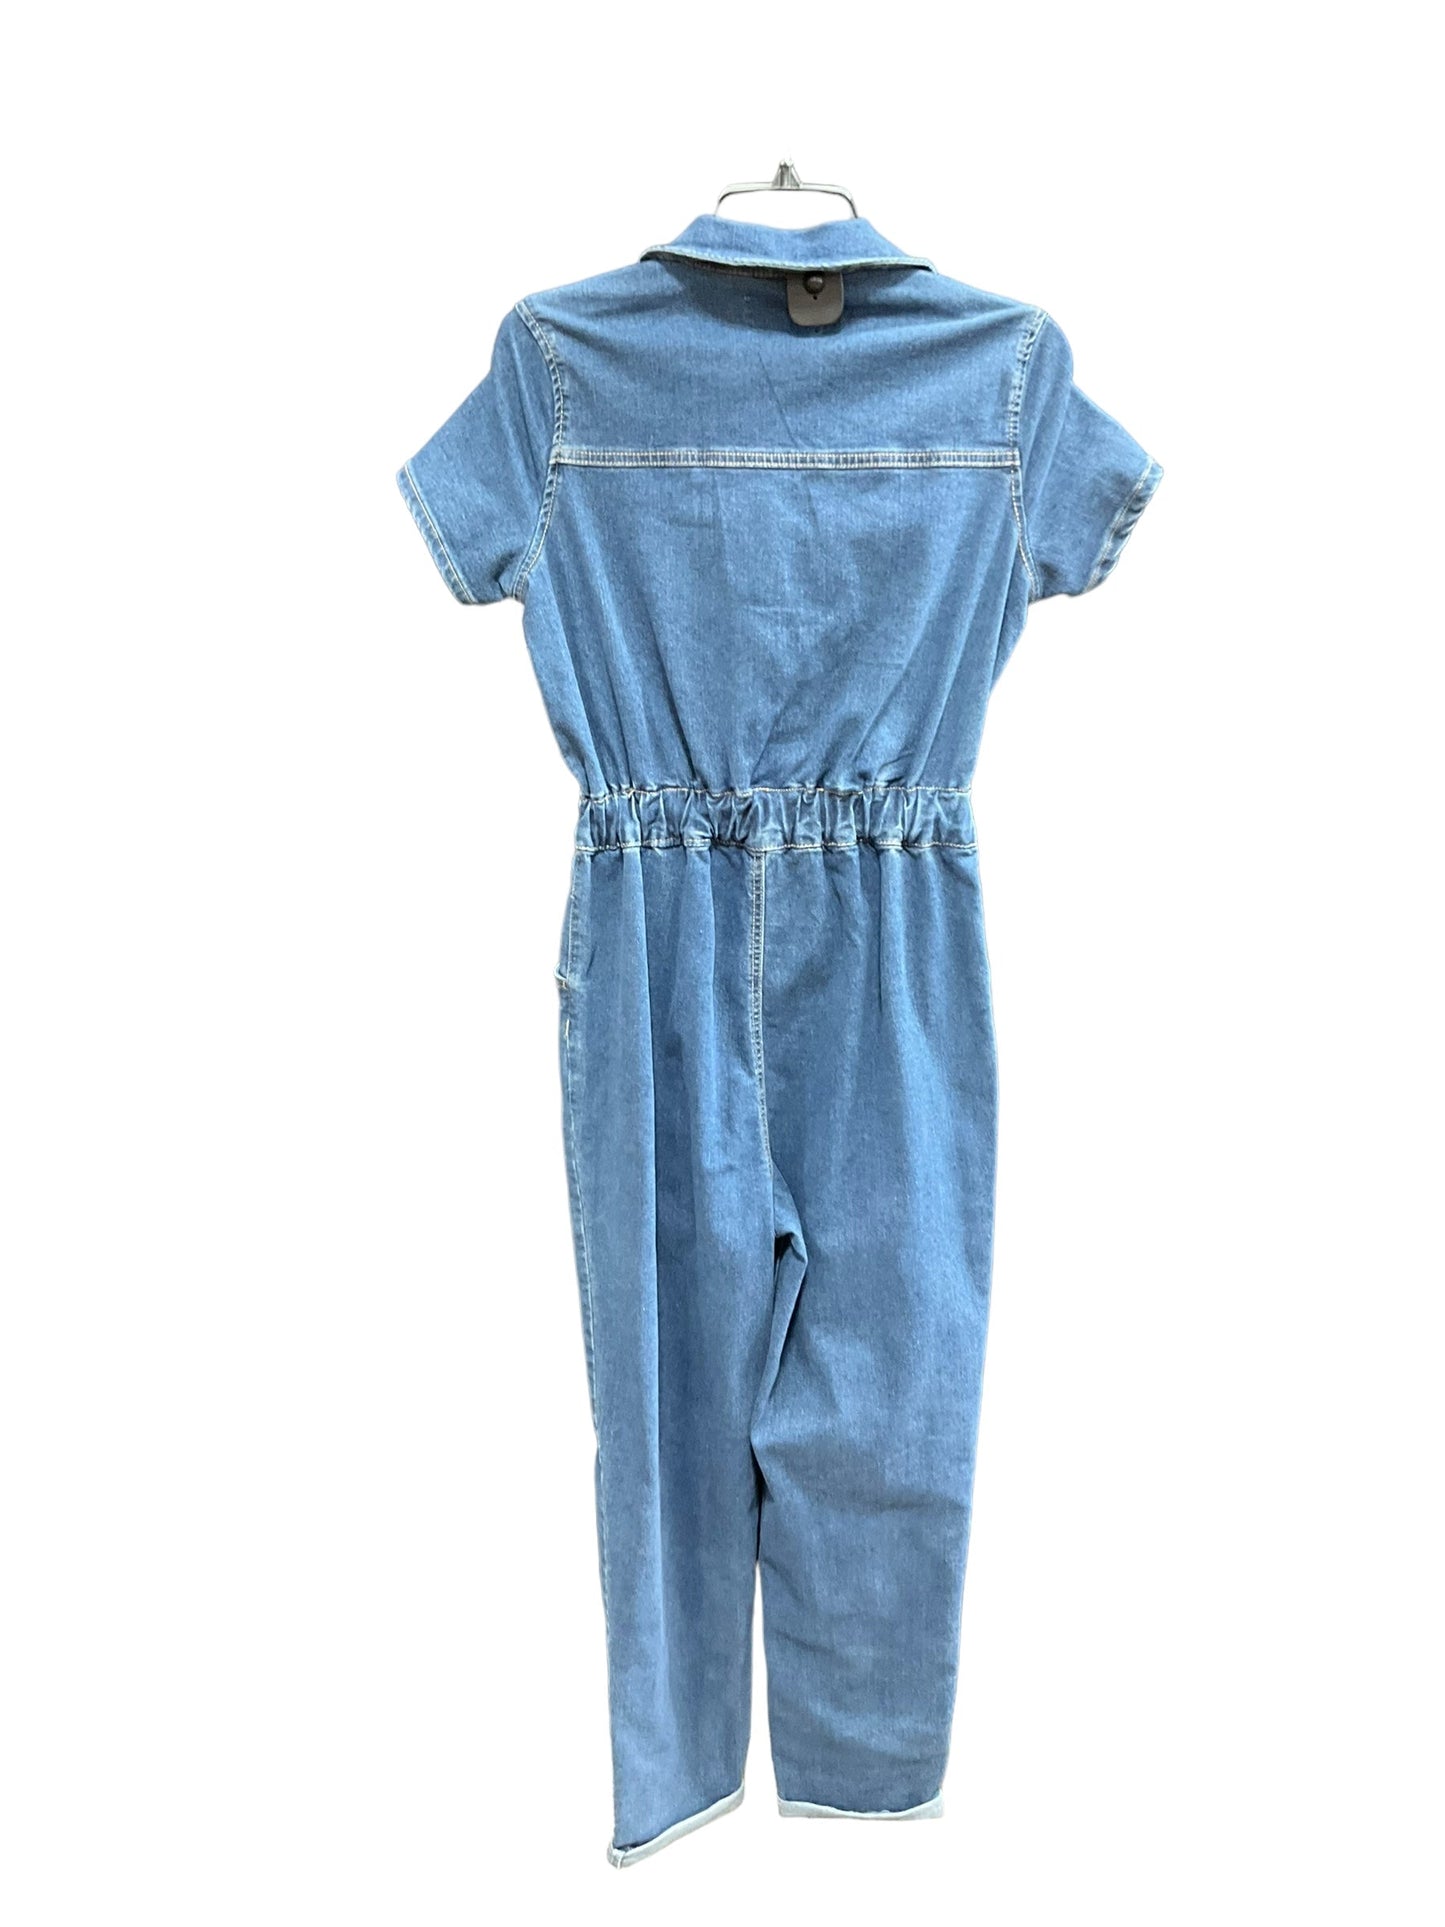 Blue Denim Jumpsuit Clothes Mentor, Size Xs